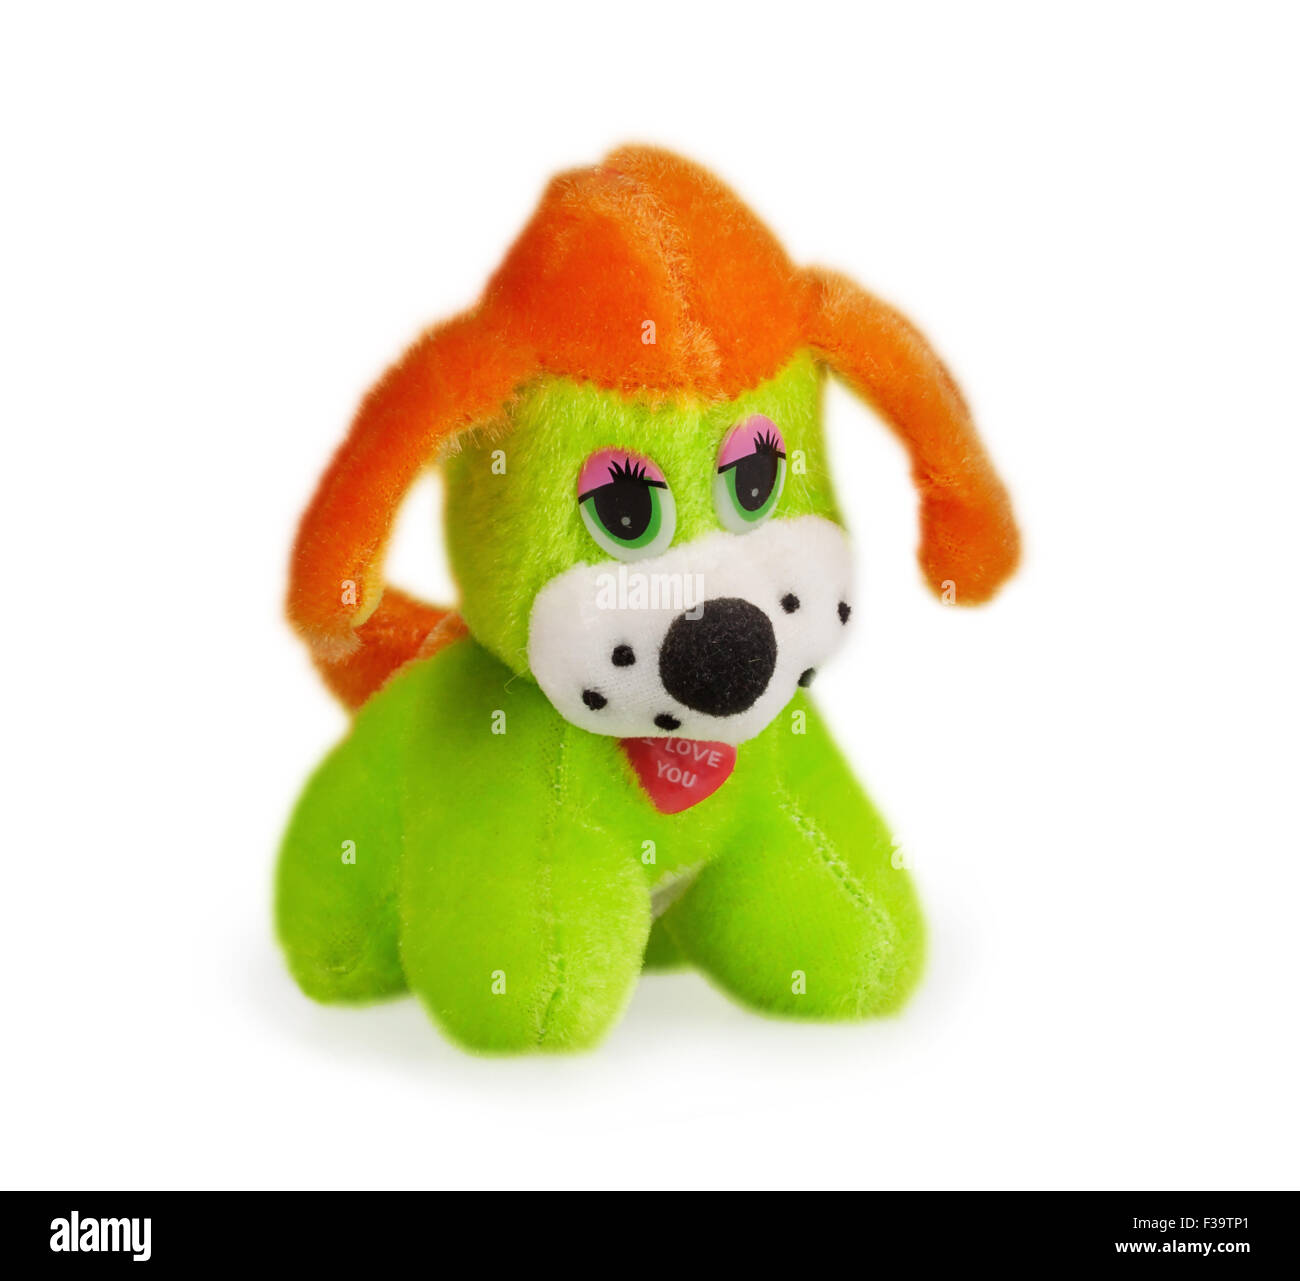 soft toy dog isolated on white background Stock Photo